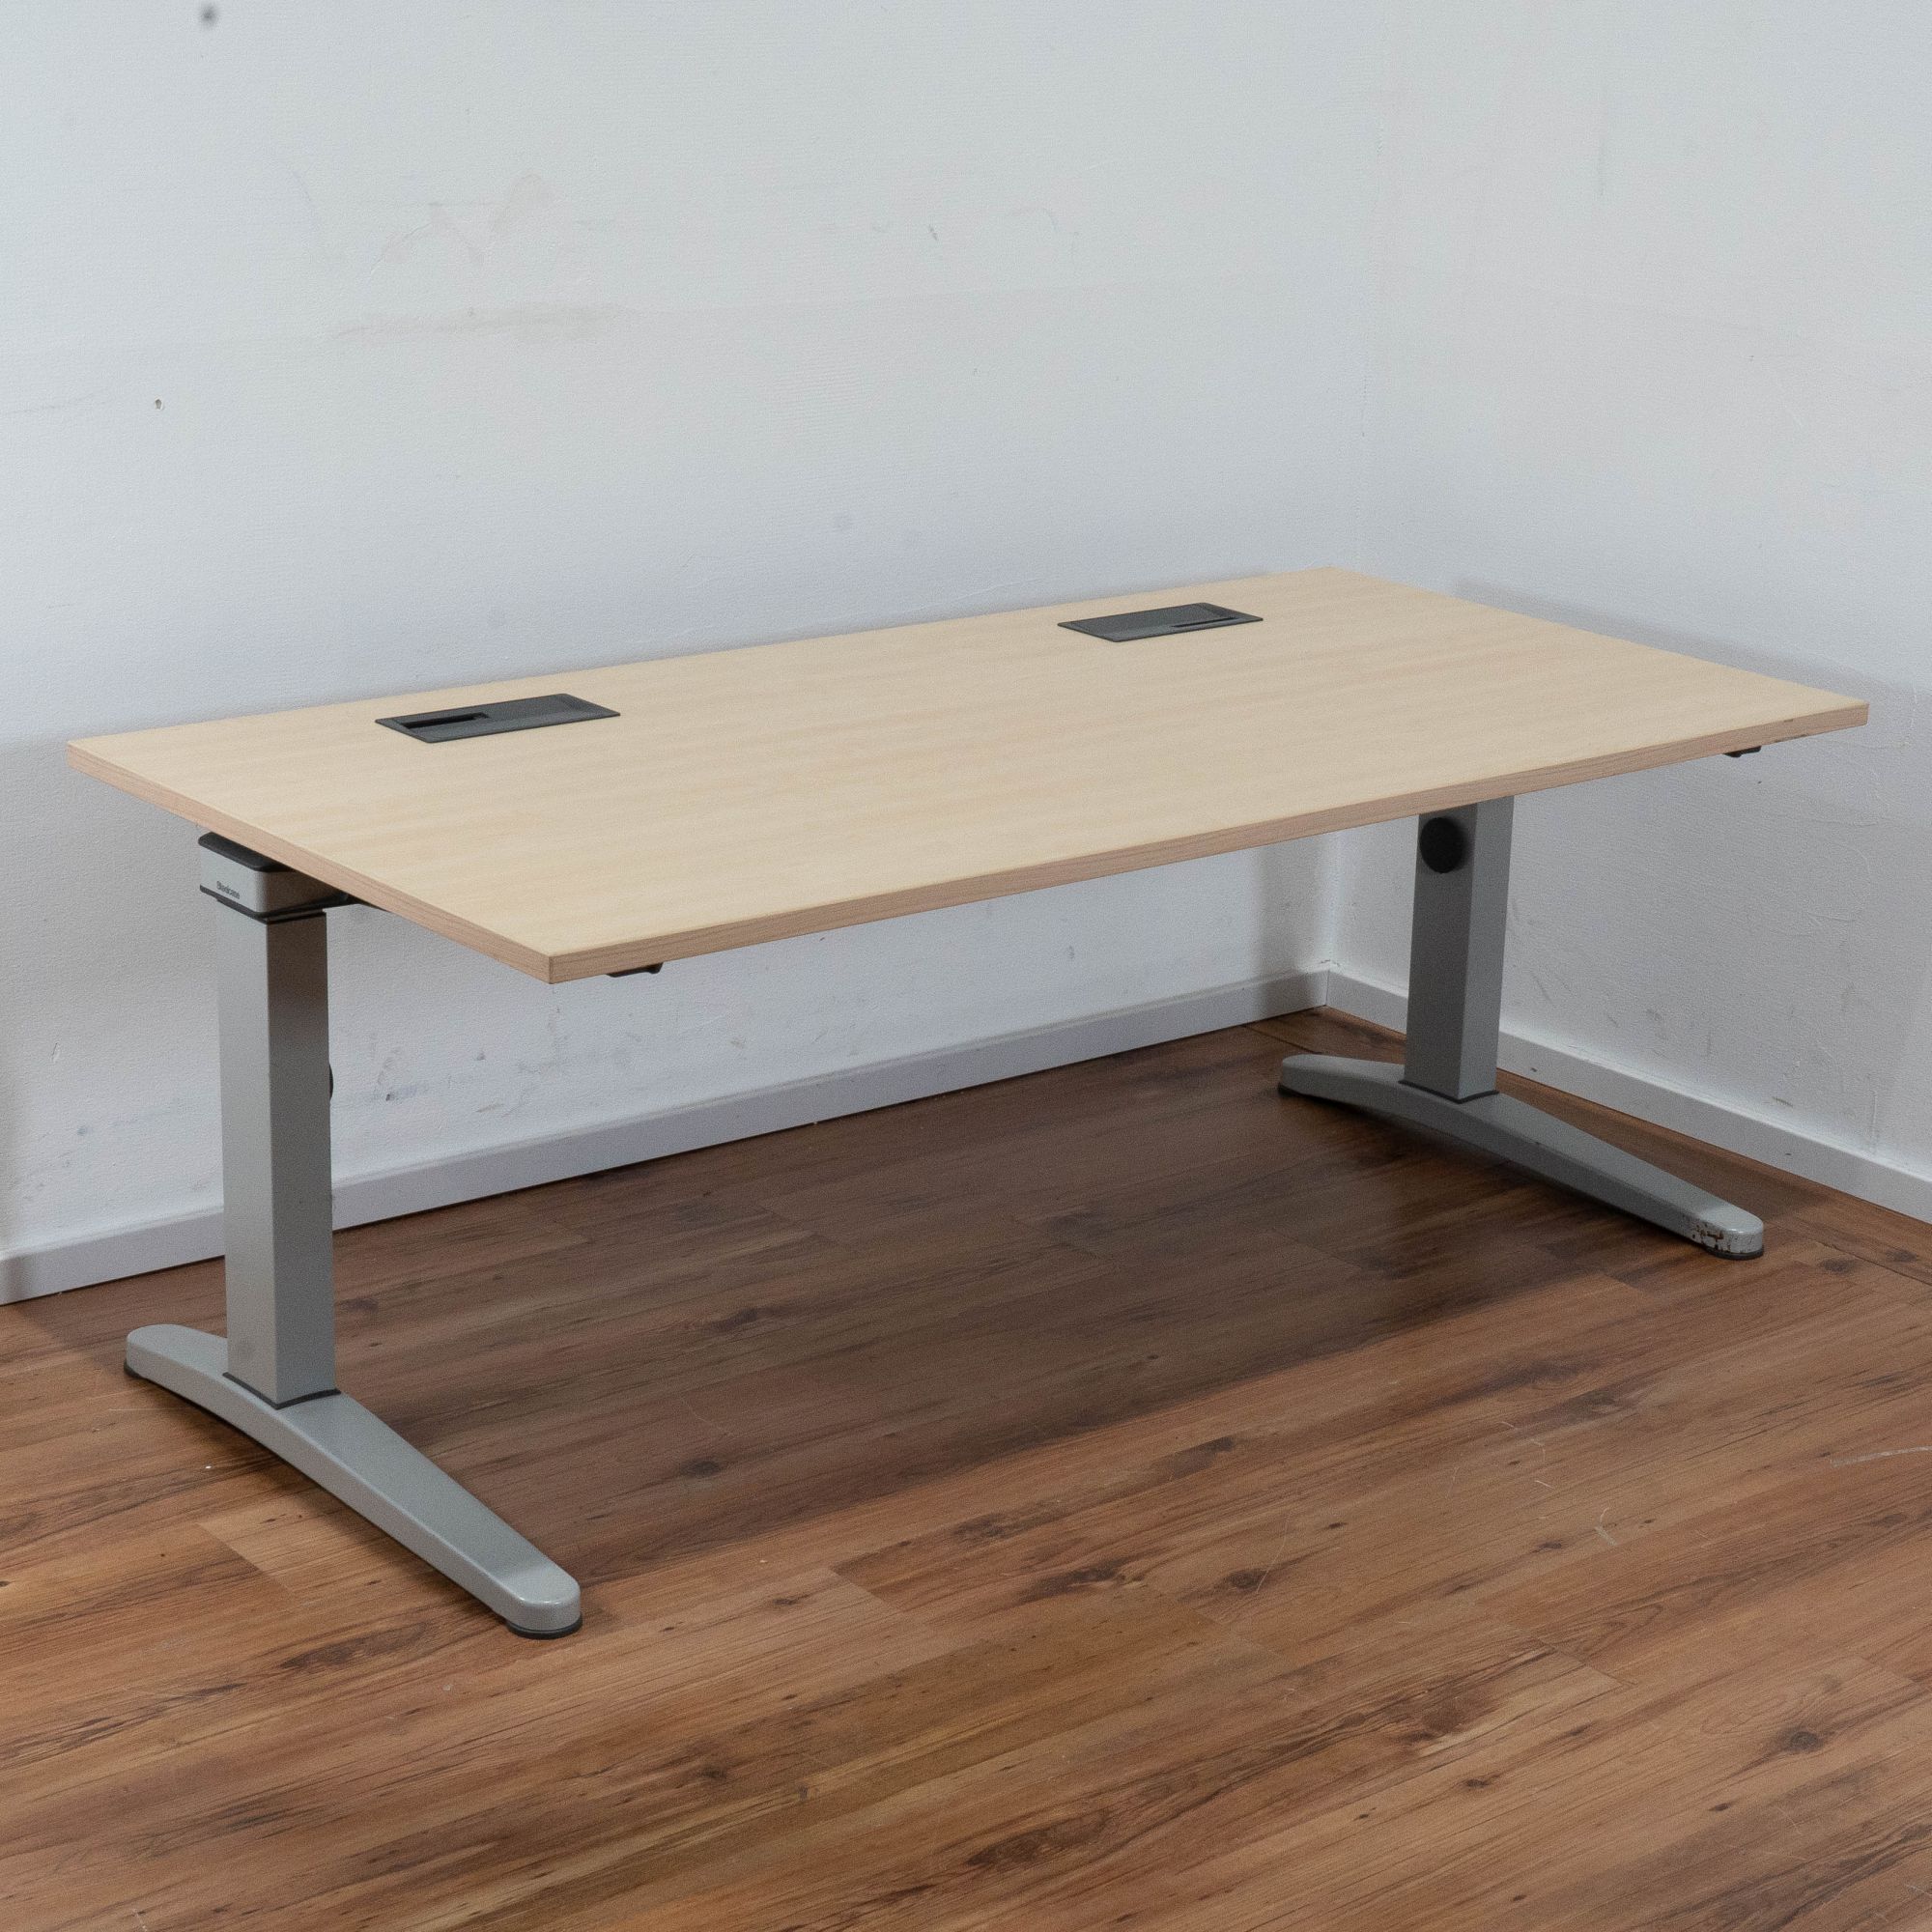 Miete: Steelcase Schreibtisch 160 x 80 cm